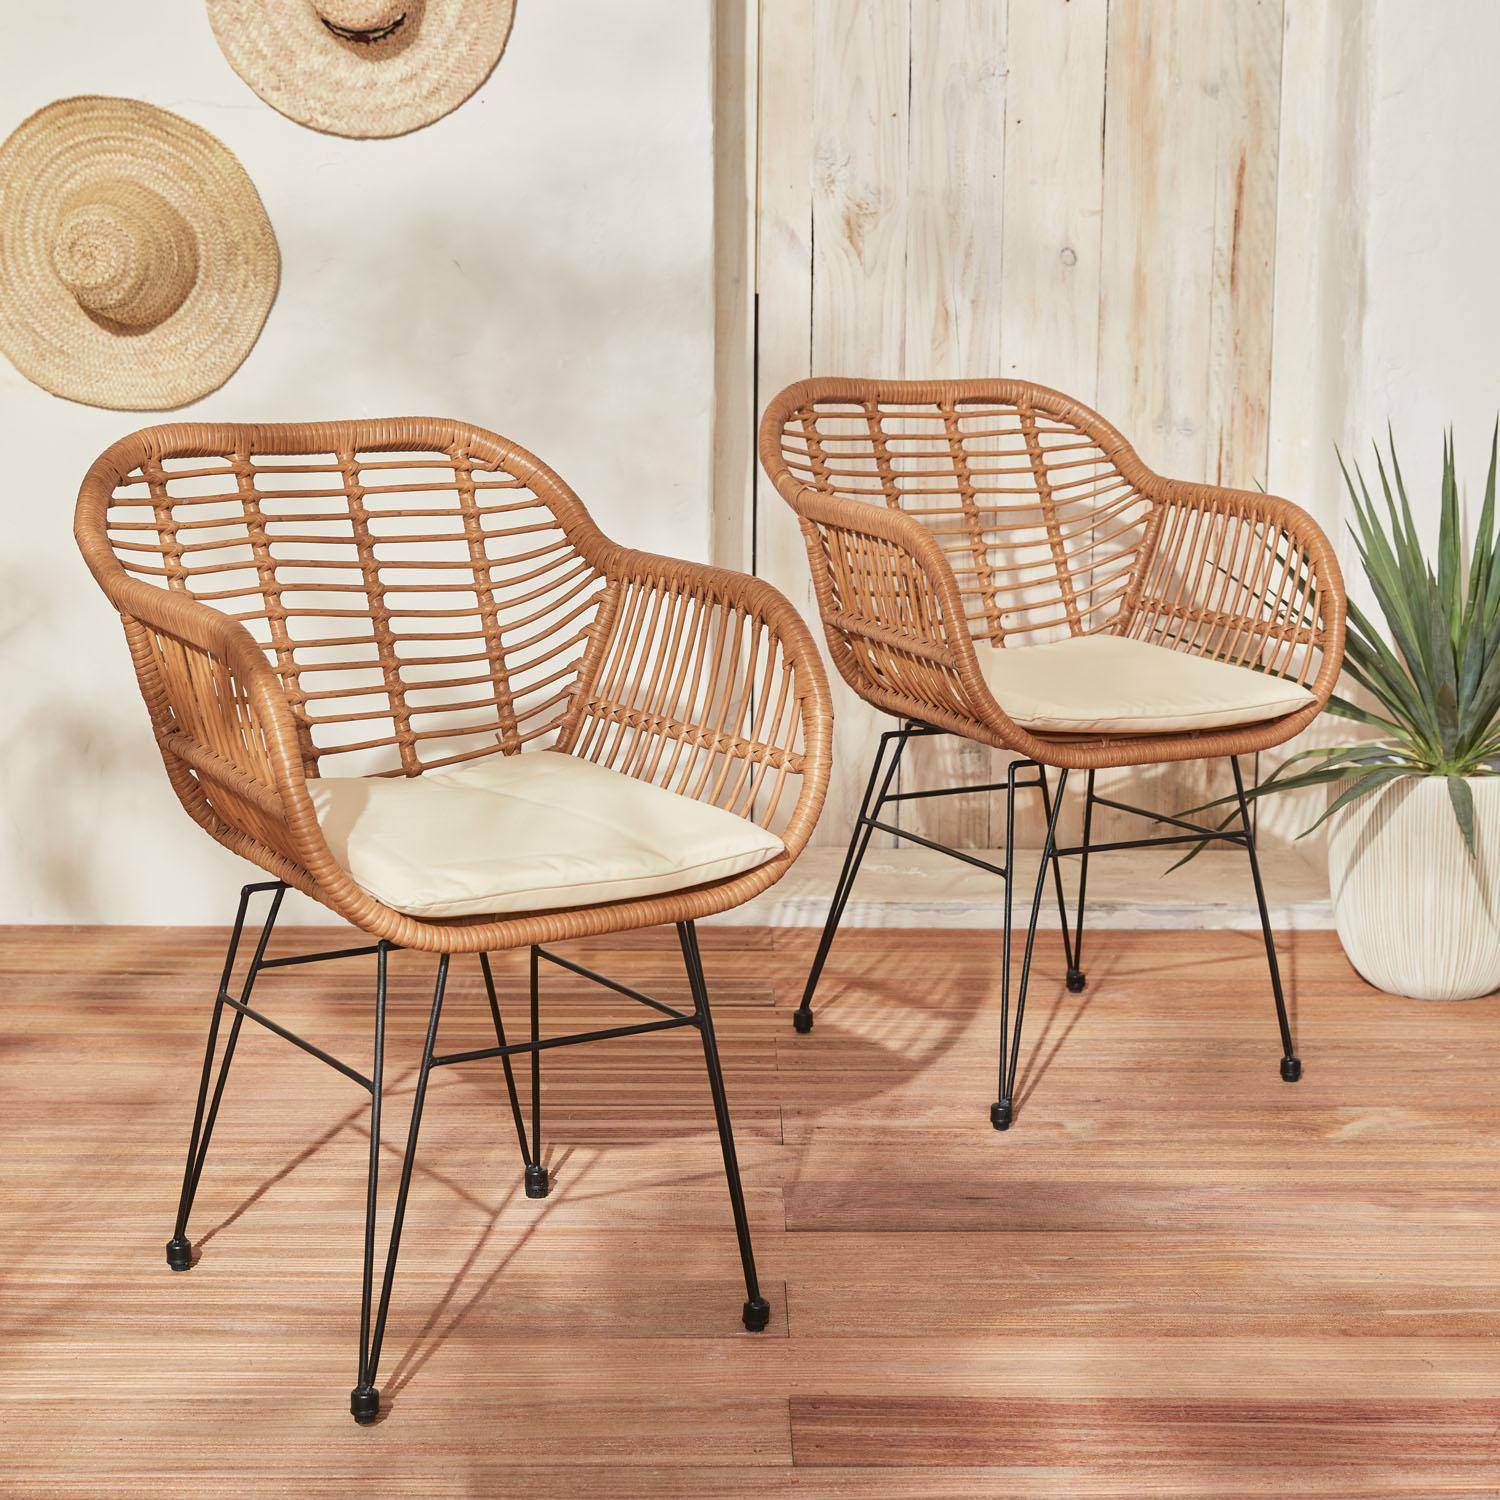 Set van 2 wicker stoelen met bamboe effect, zwart metalen frame, afneembare hoezen, beige kussen Photo1